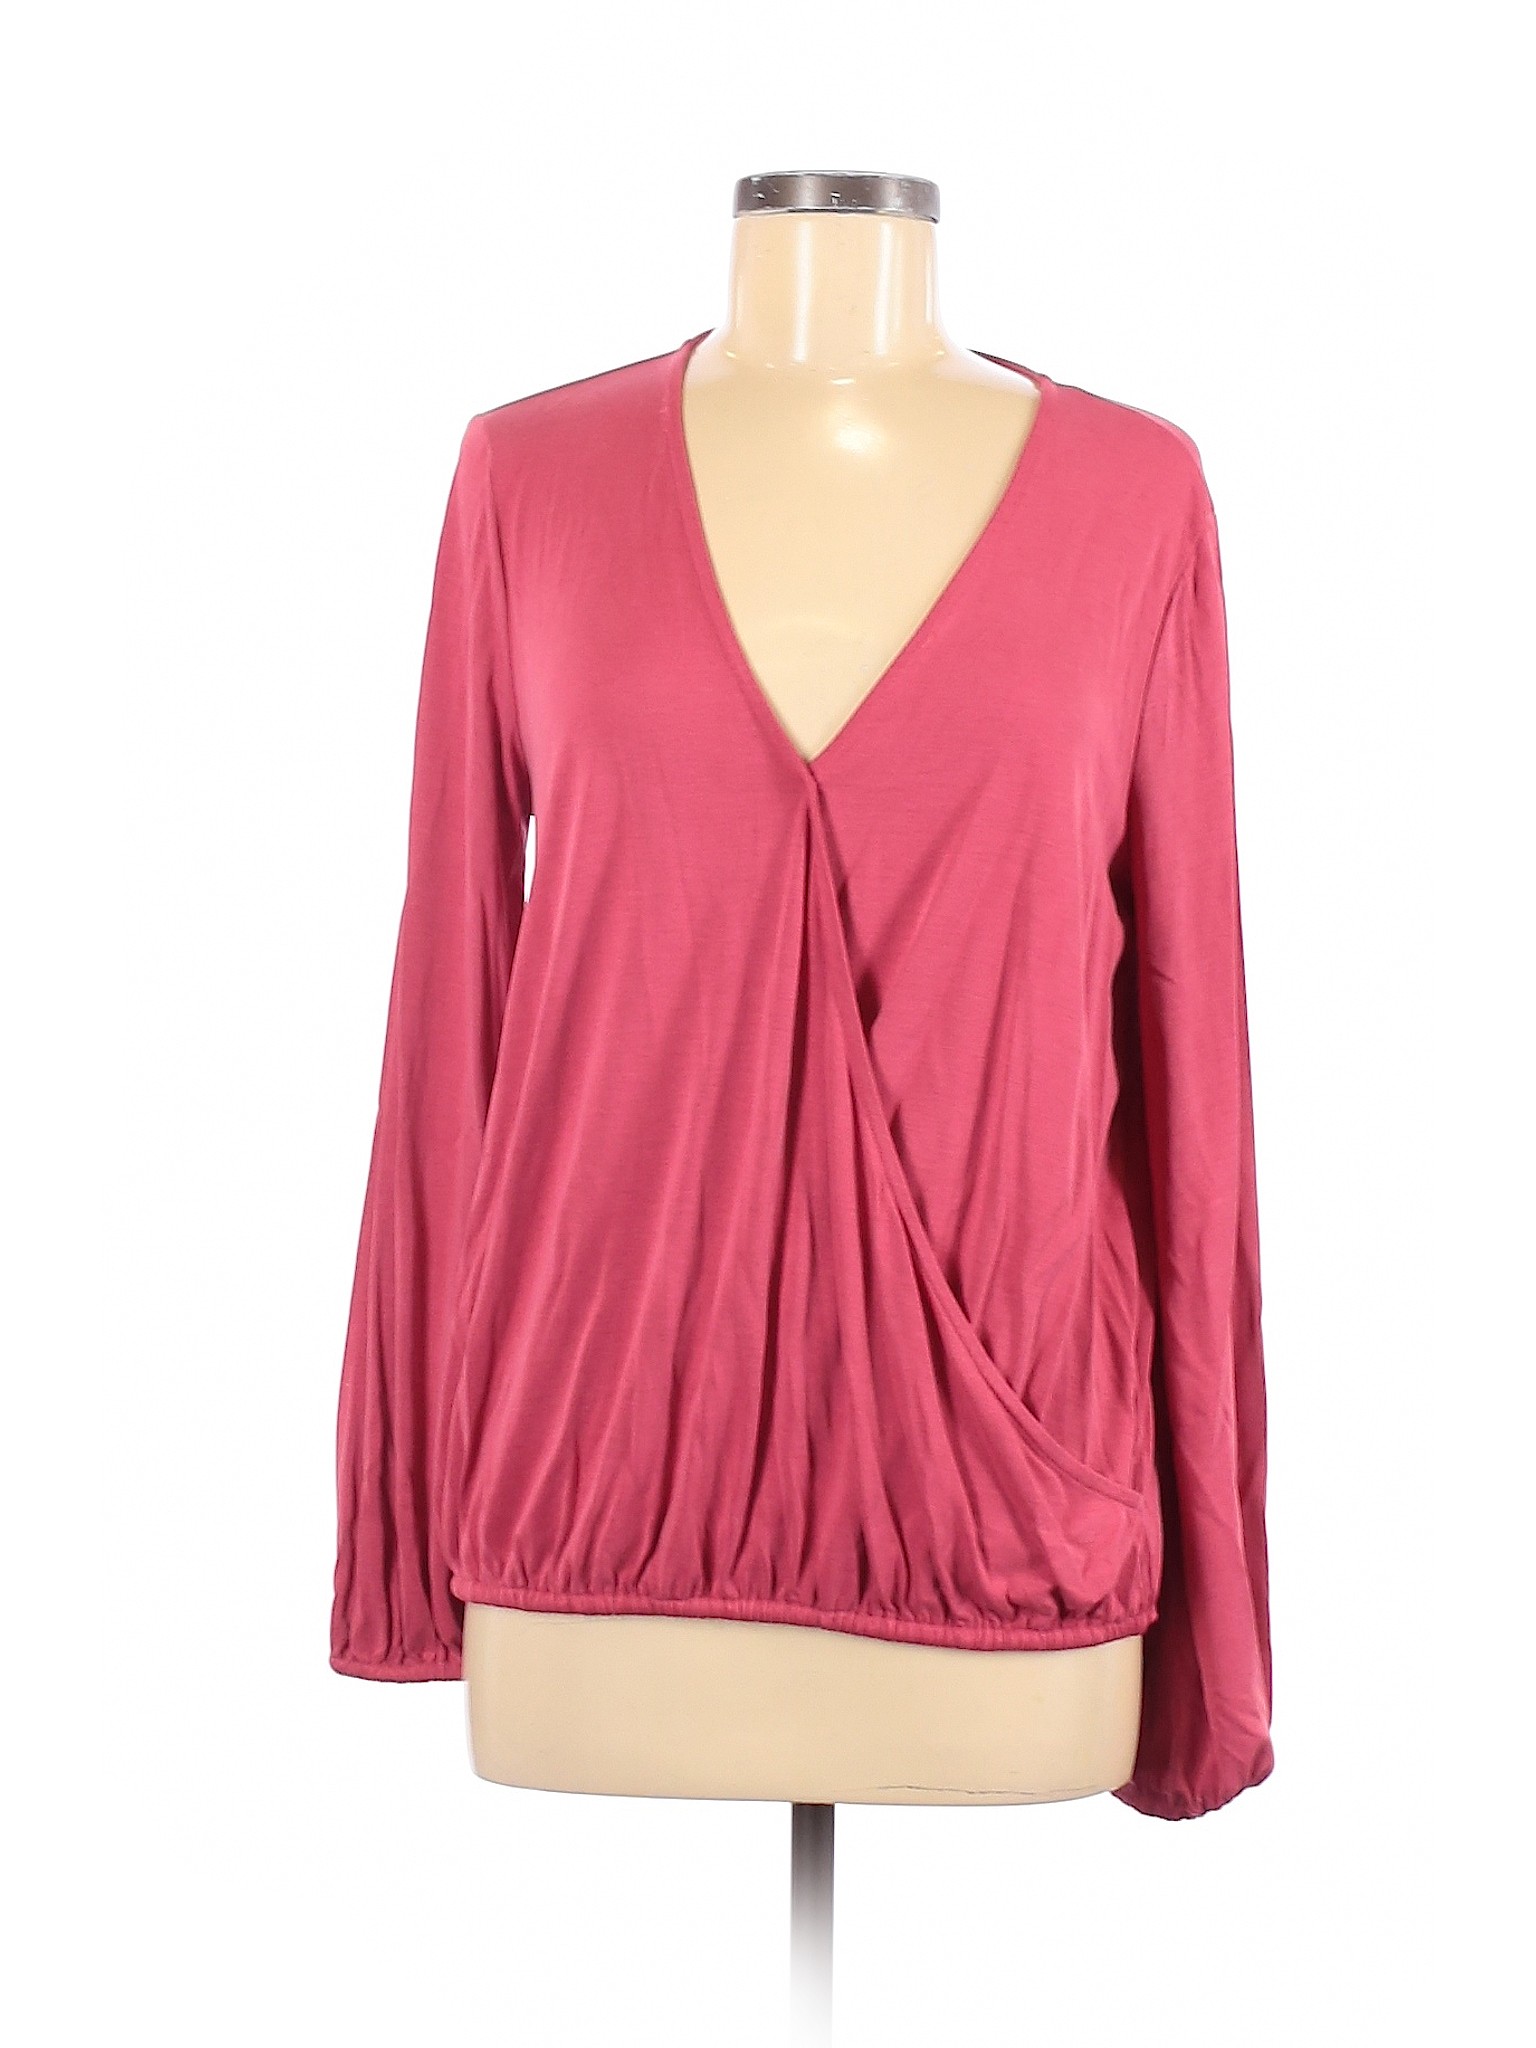 Sunday in Brooklyn Women Pink Long Sleeve Top M | eBay